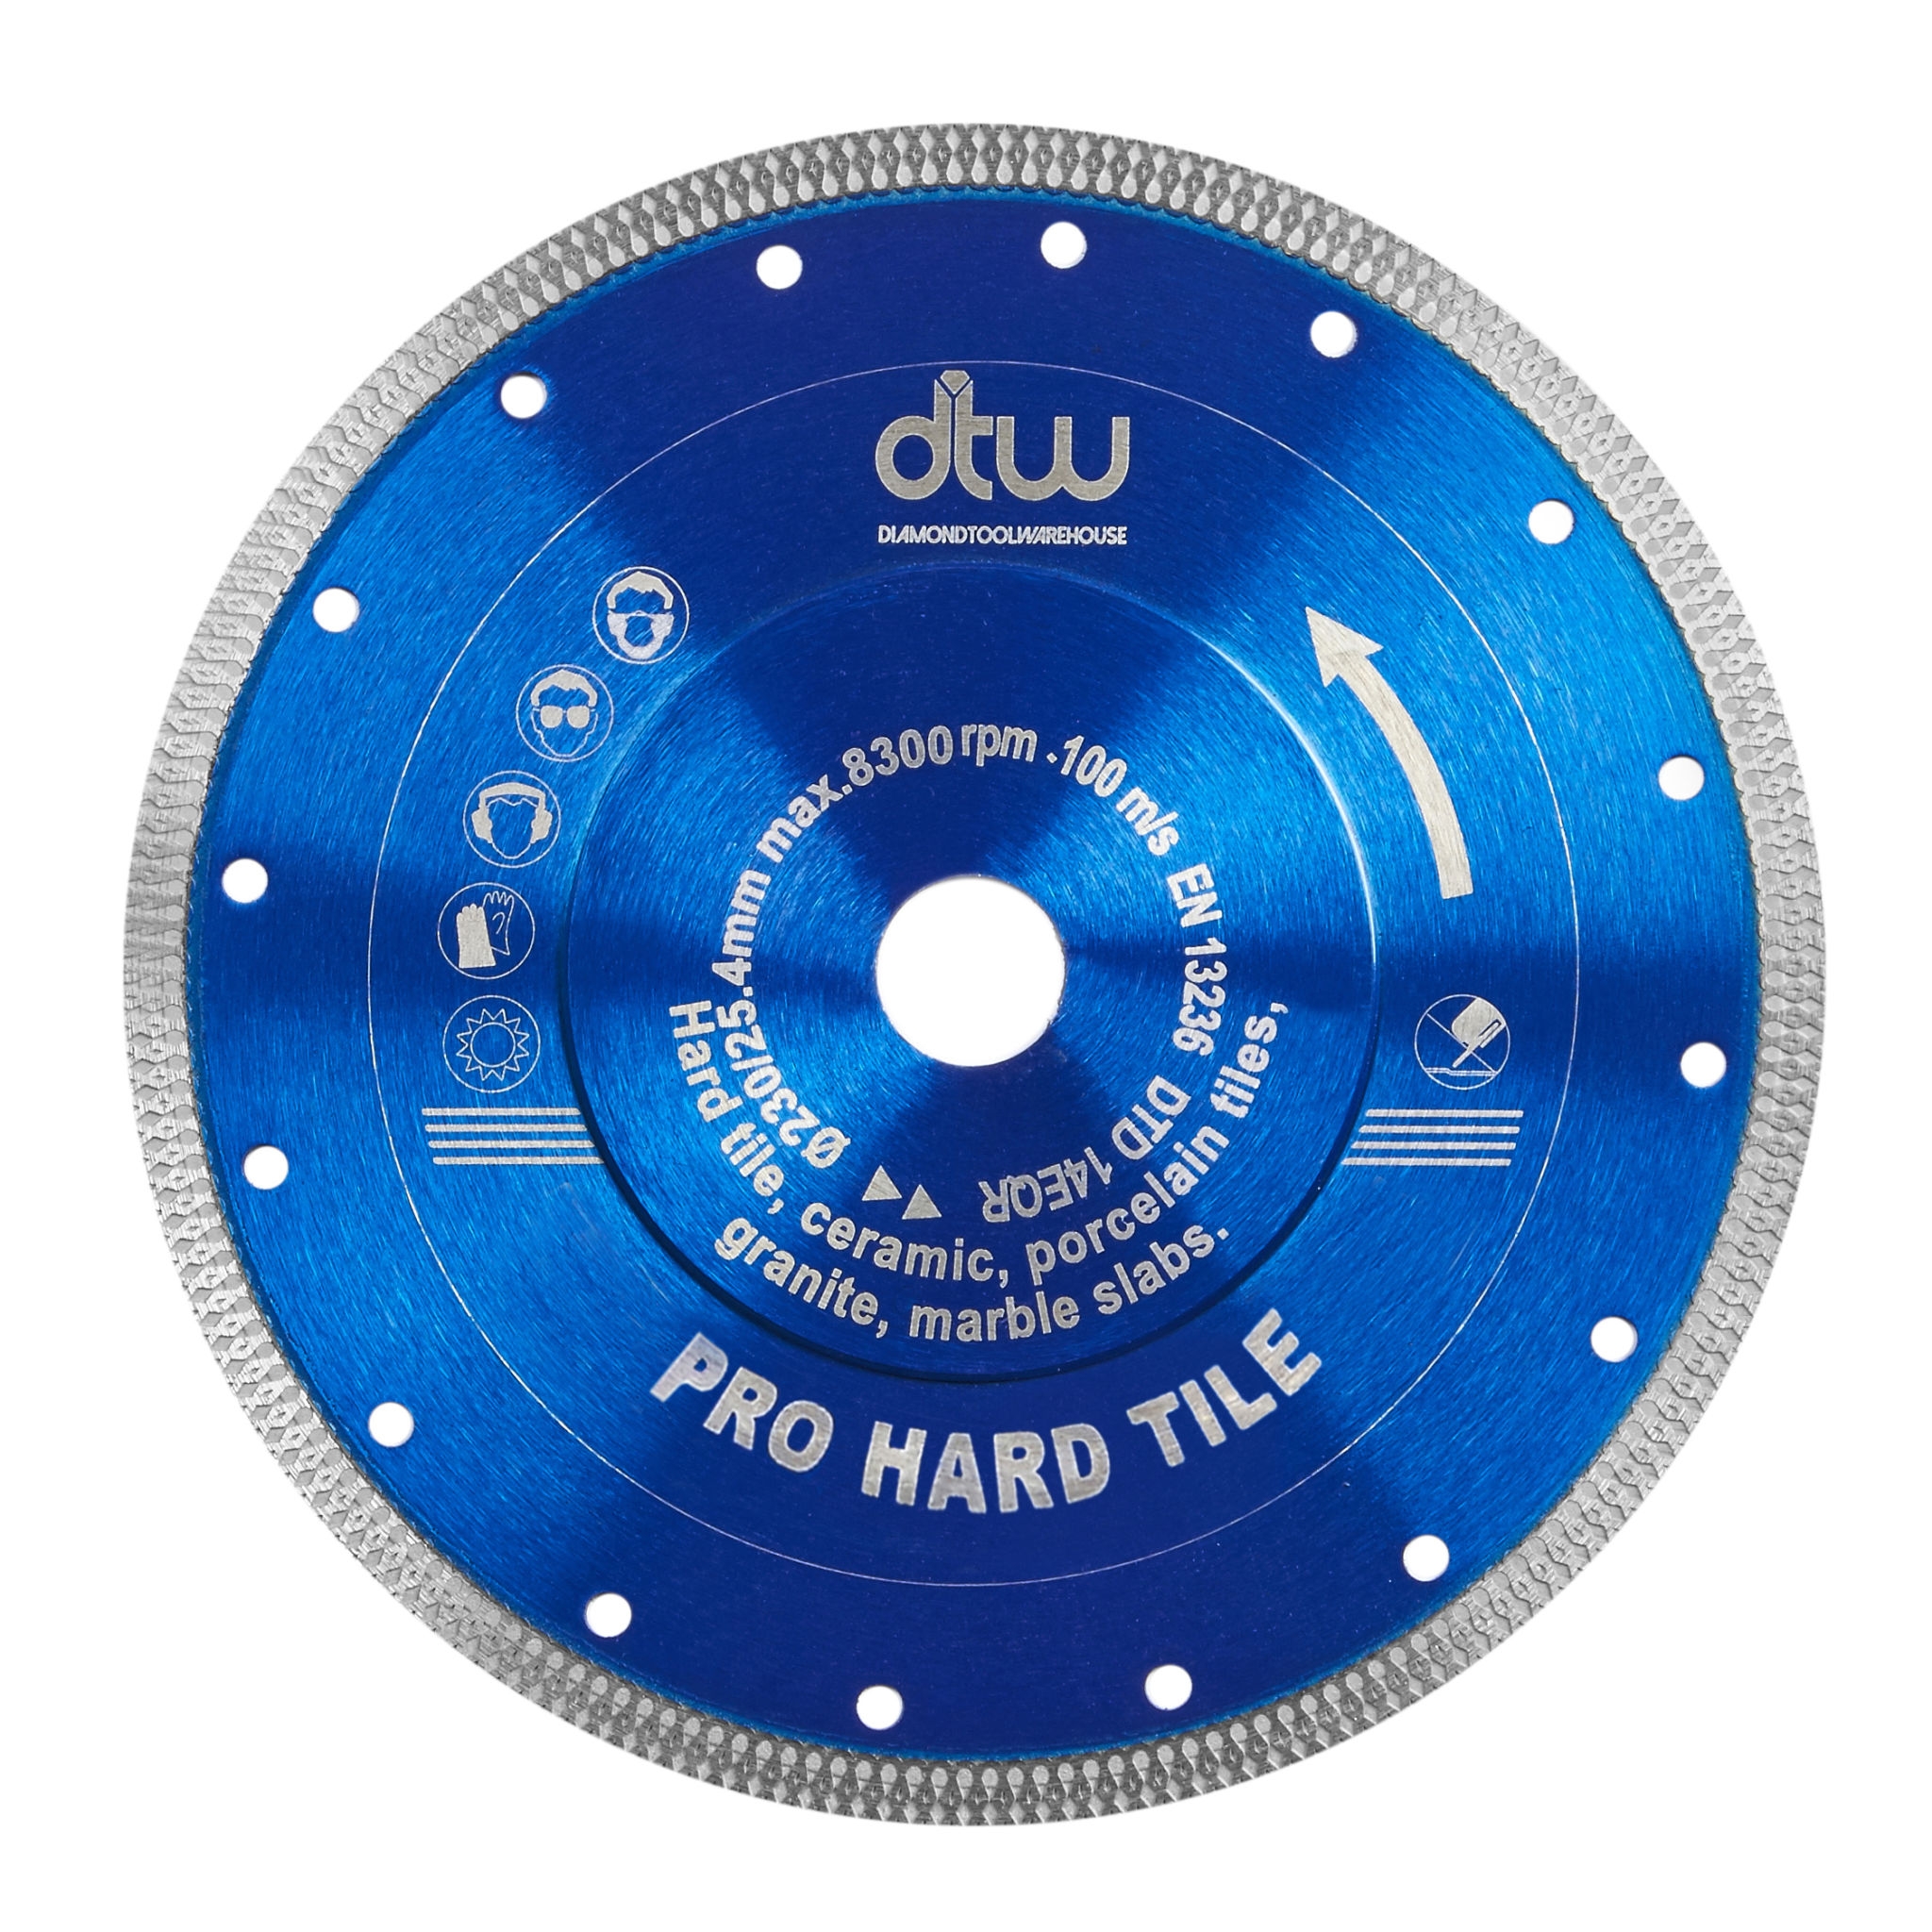 DTW Pro Hard Tile Saw Blade 230mm/9″ – 230mm/9″ x 22.23mm